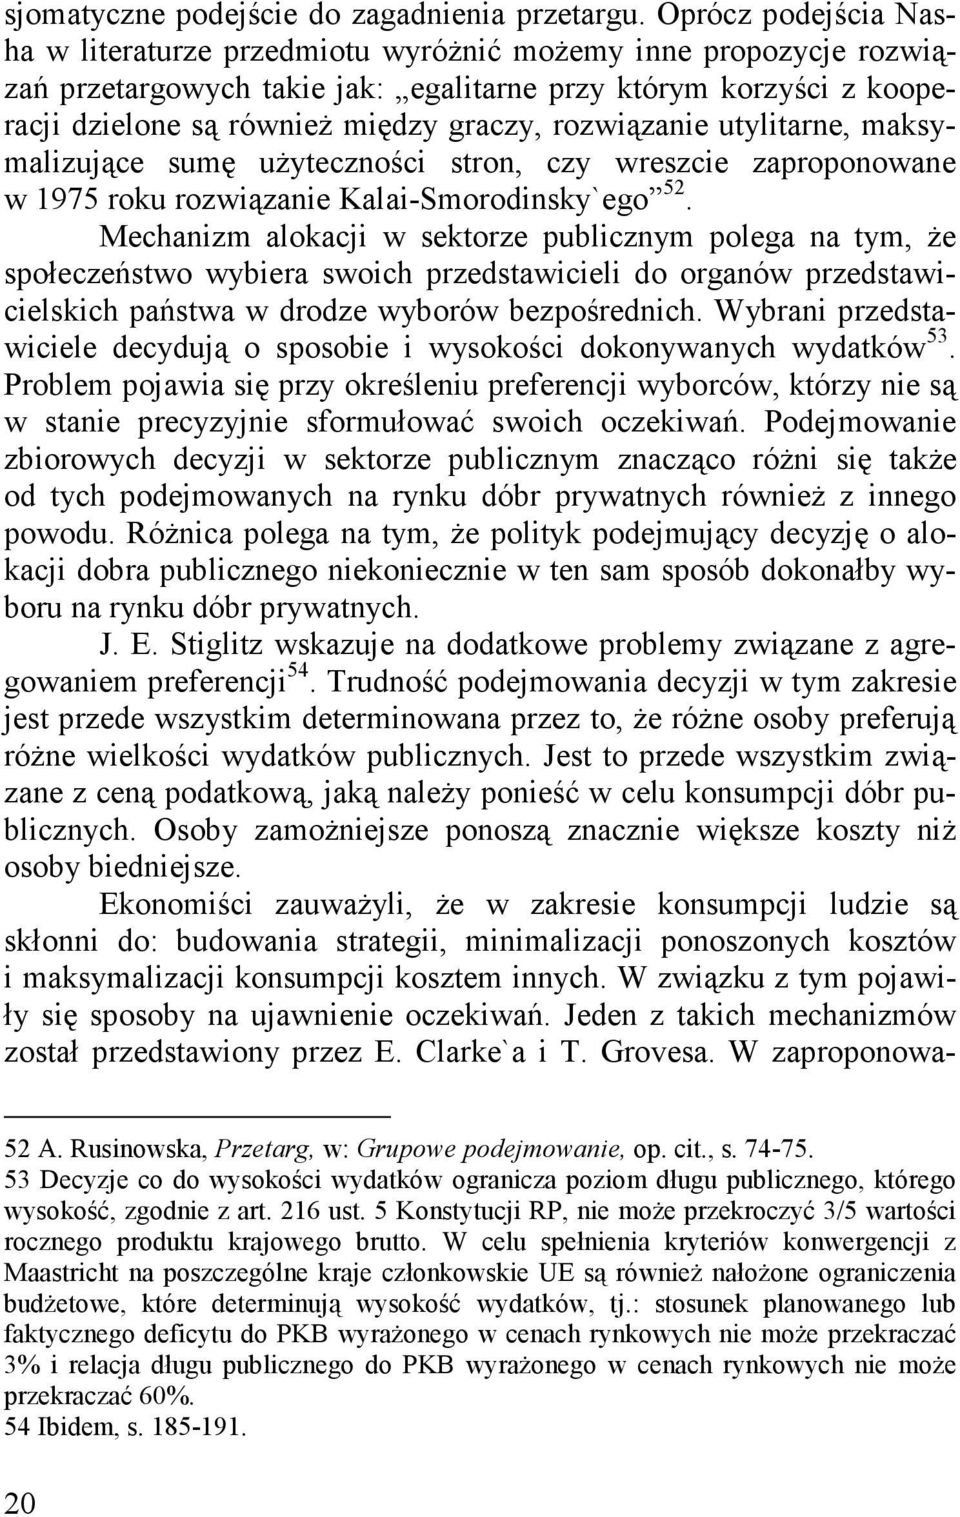 rozwiązanie utylitarne, maksymalizujące sumę użyteczności stron, czy wreszcie zaproponowane w 1975 roku rozwiązanie Kalai-Smorodinsky`ego 52.